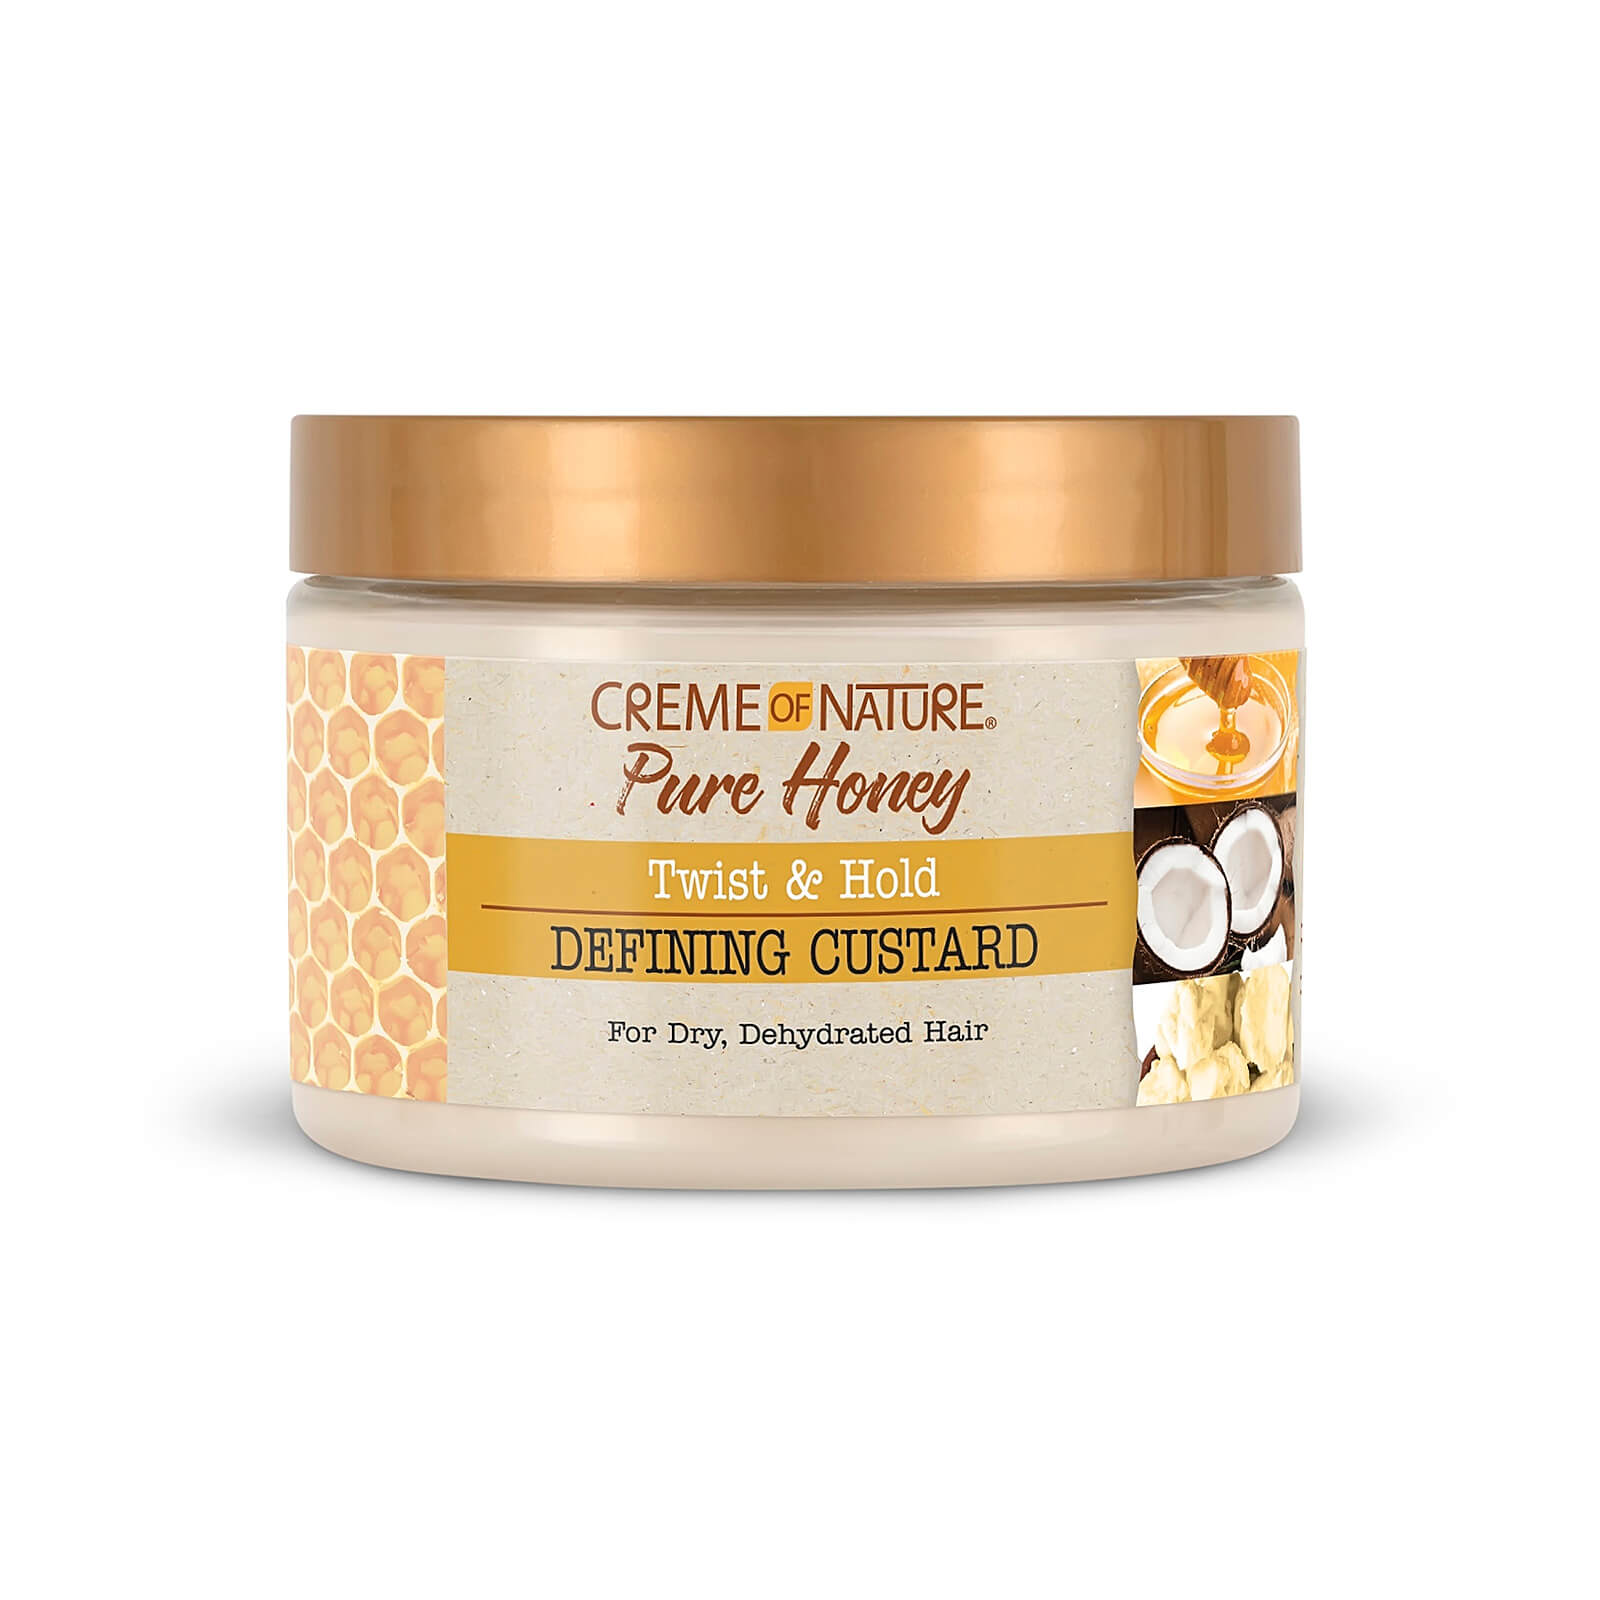 Crème of Nature Pure Honey Curling Custard 326ml lookfantastic.com imagine